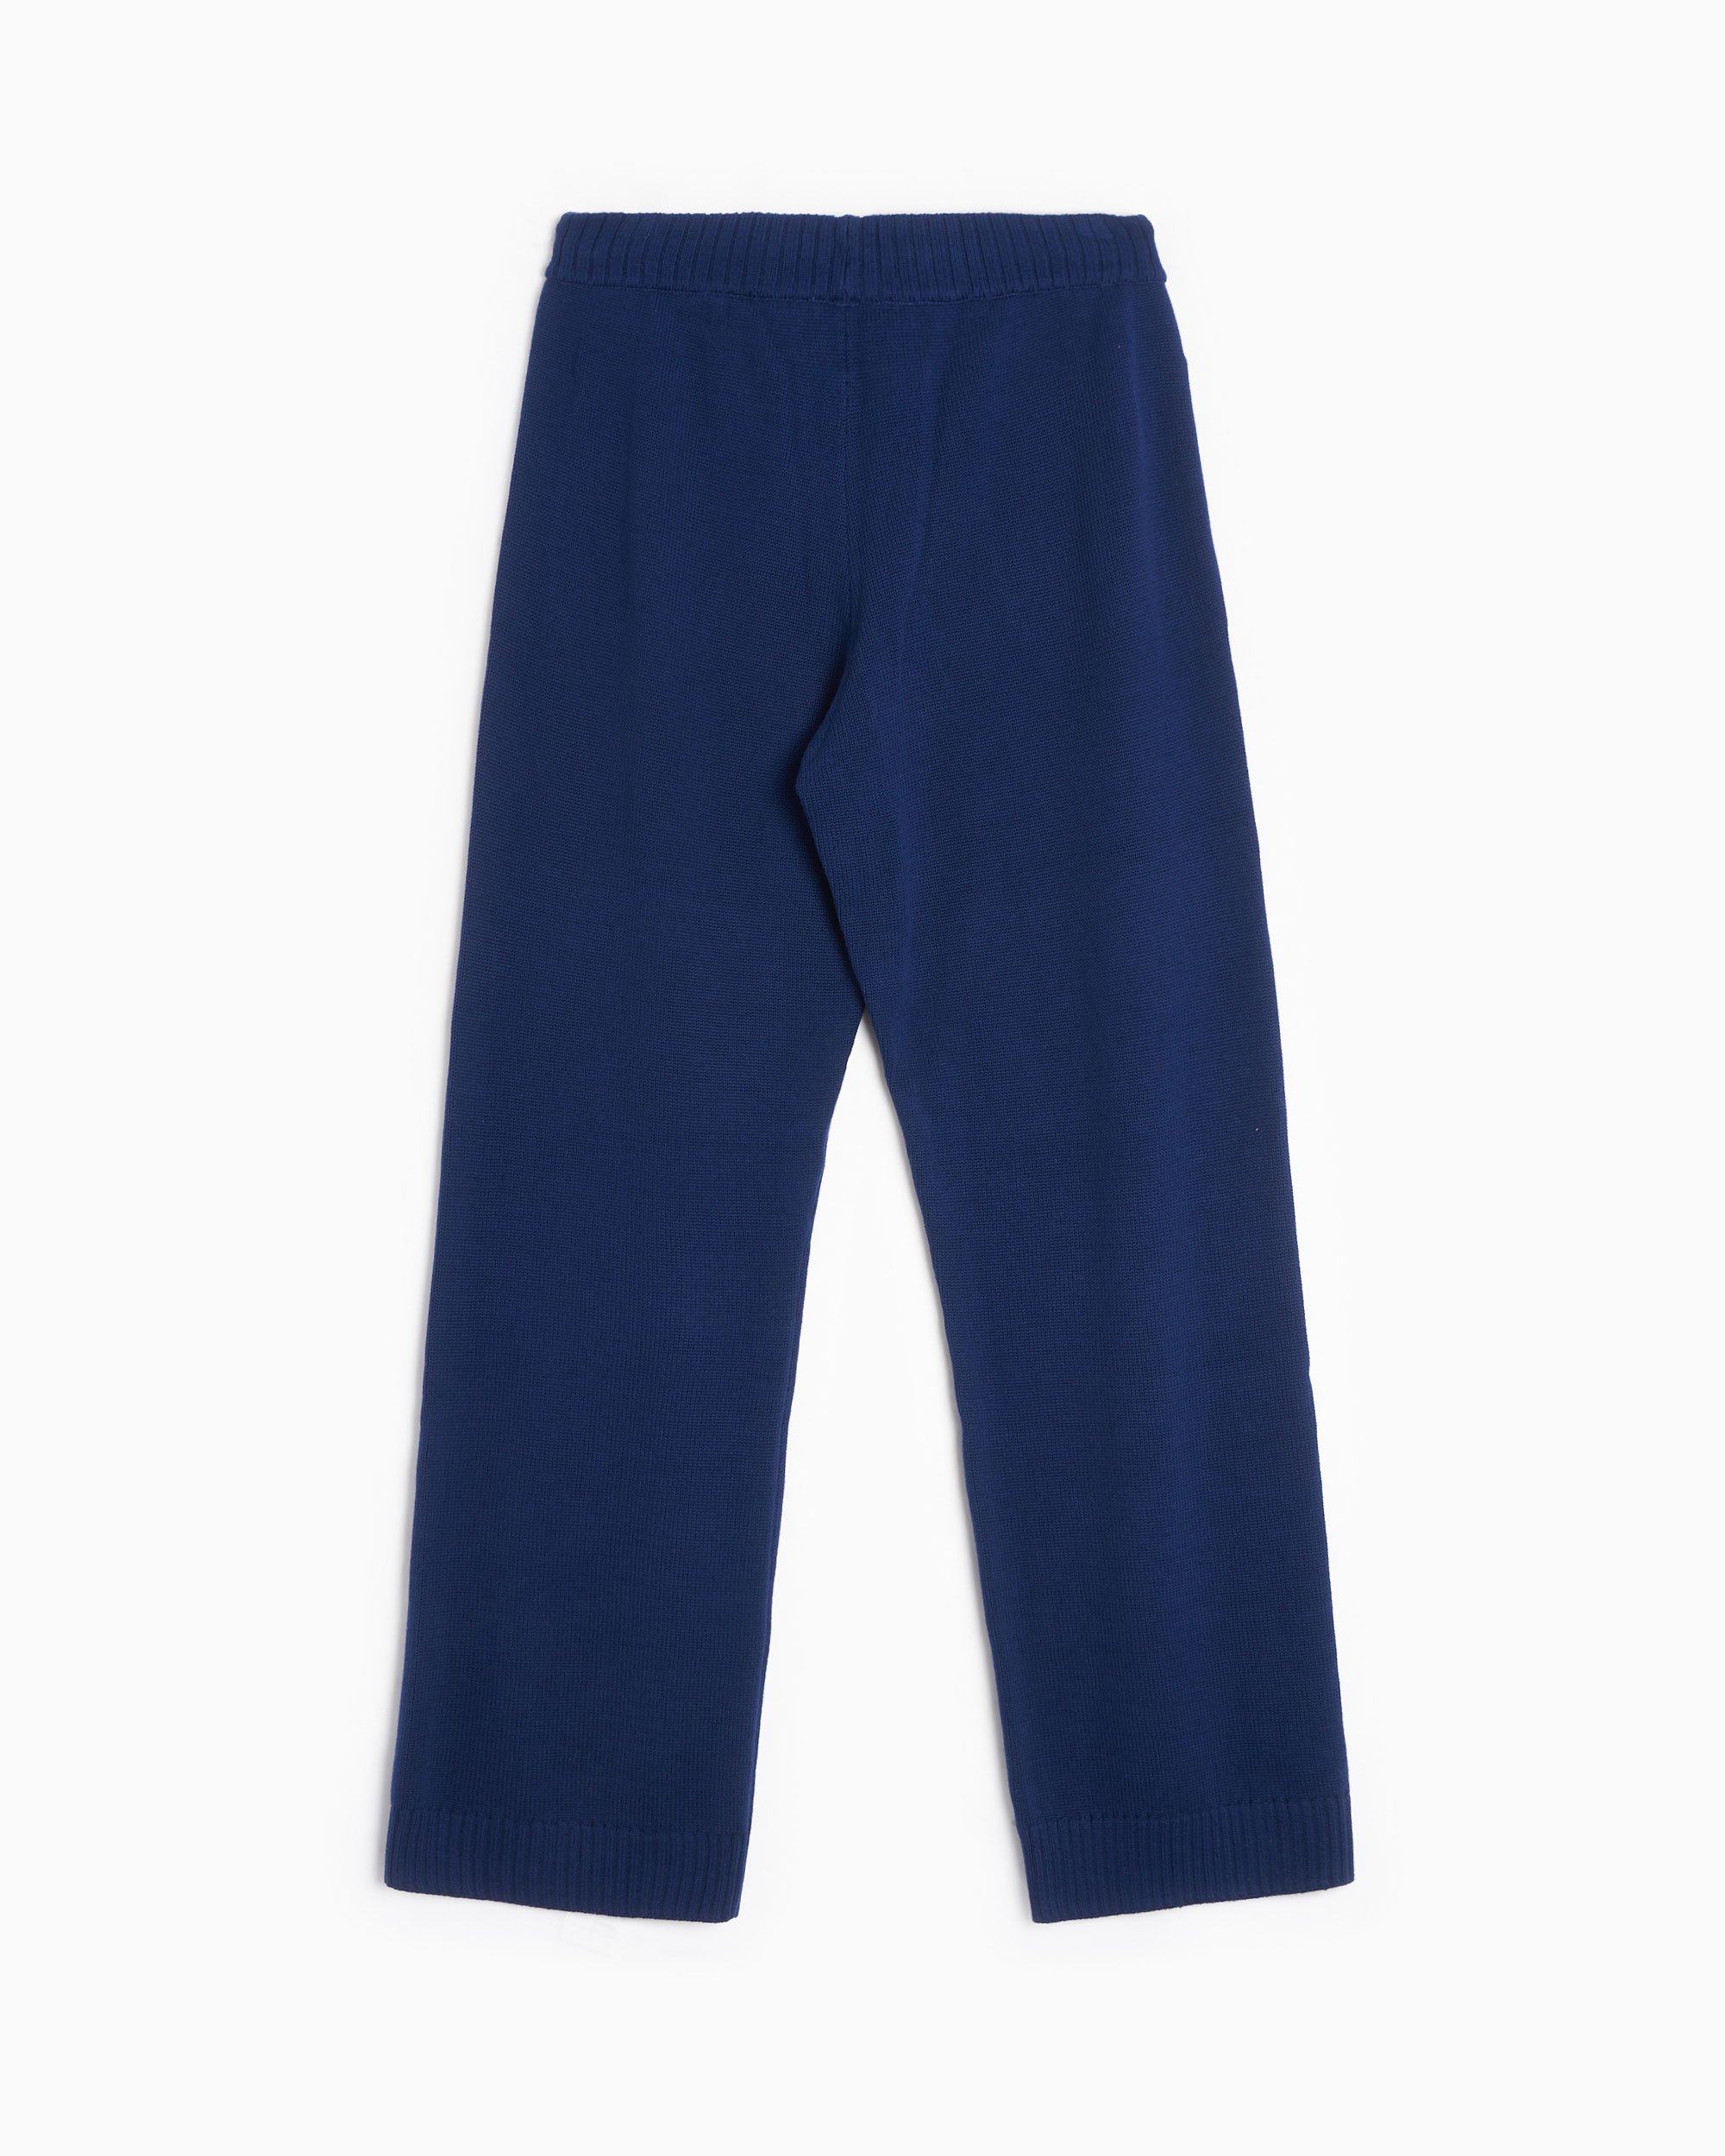 adidas Originals Women's Knit Pants Blue IL1944